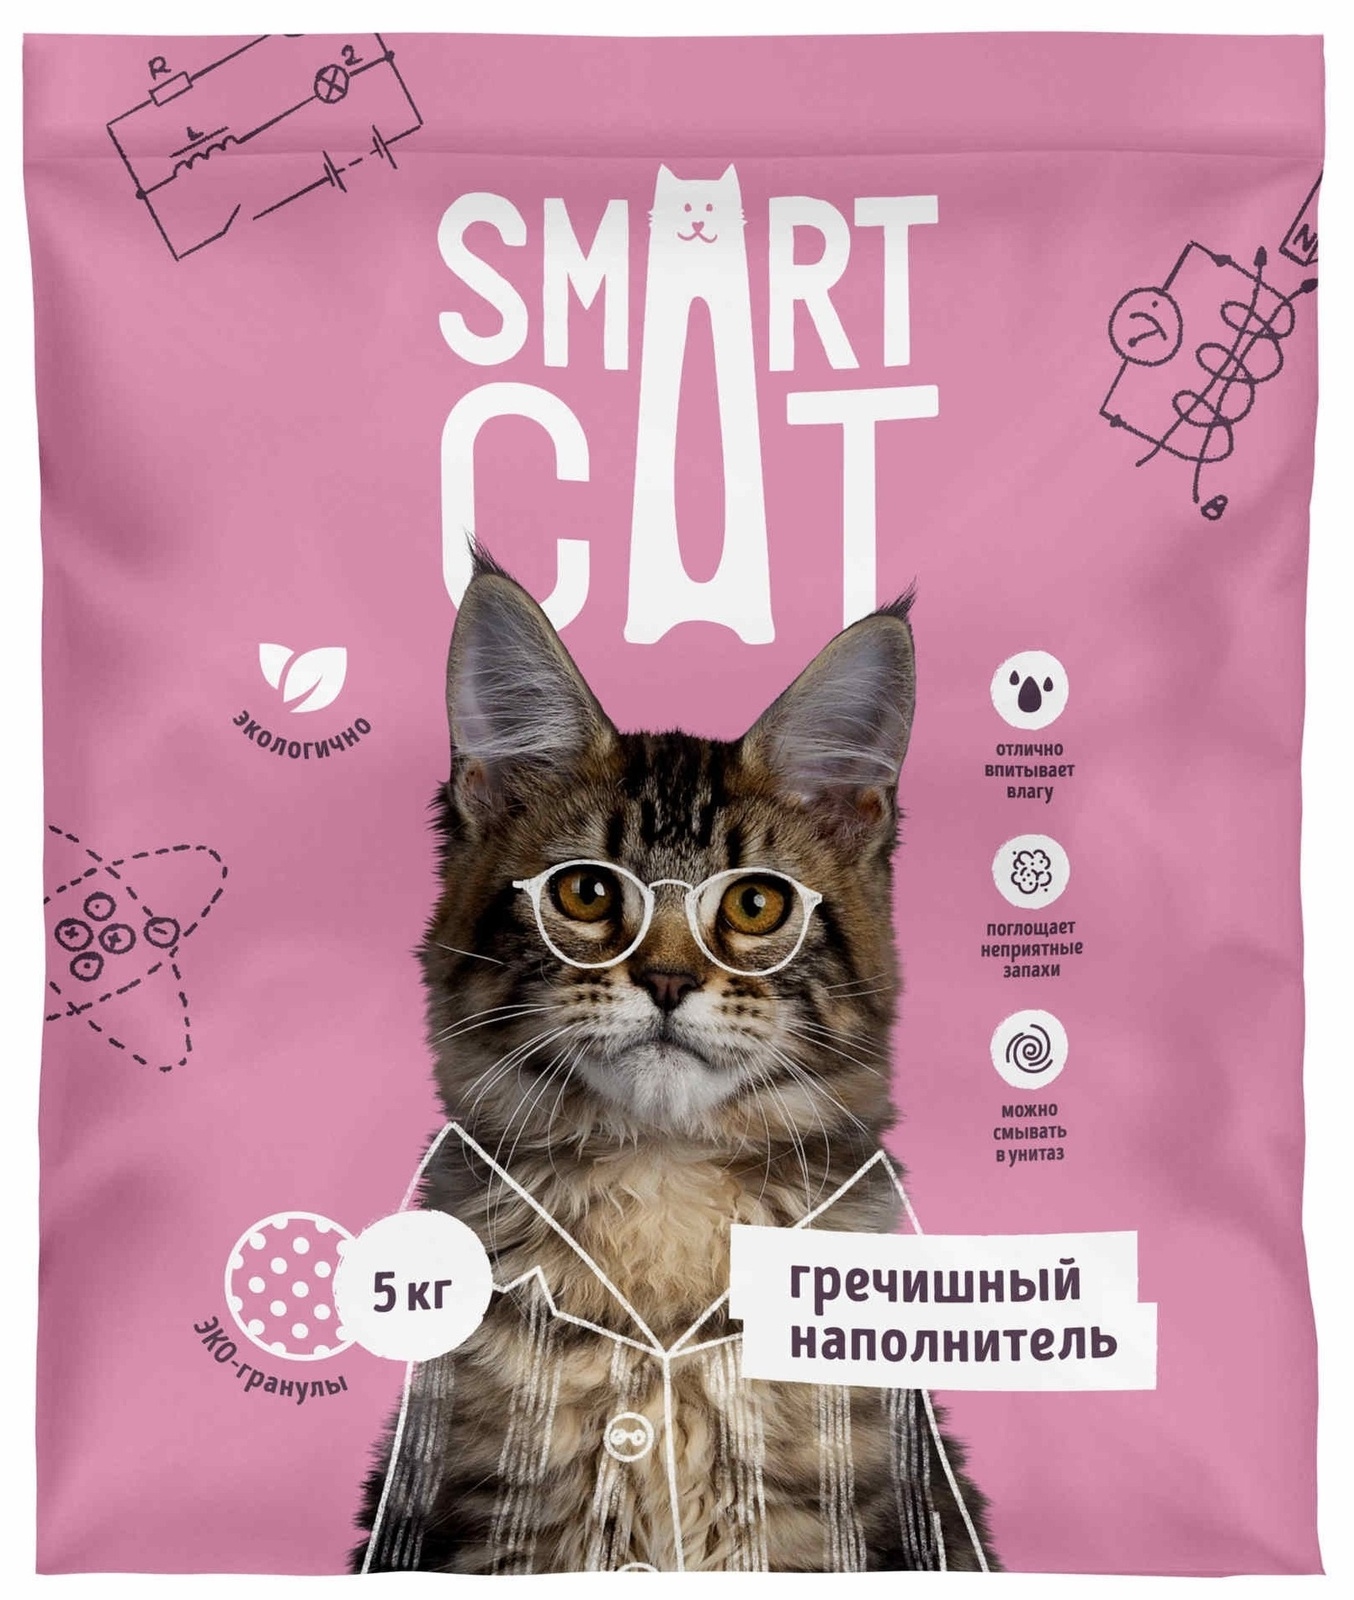 Smart Cat наполнитель гречишный наполнитель (5 кг) Smart Cat наполнитель гречишный наполнитель (5 кг) - фото 1